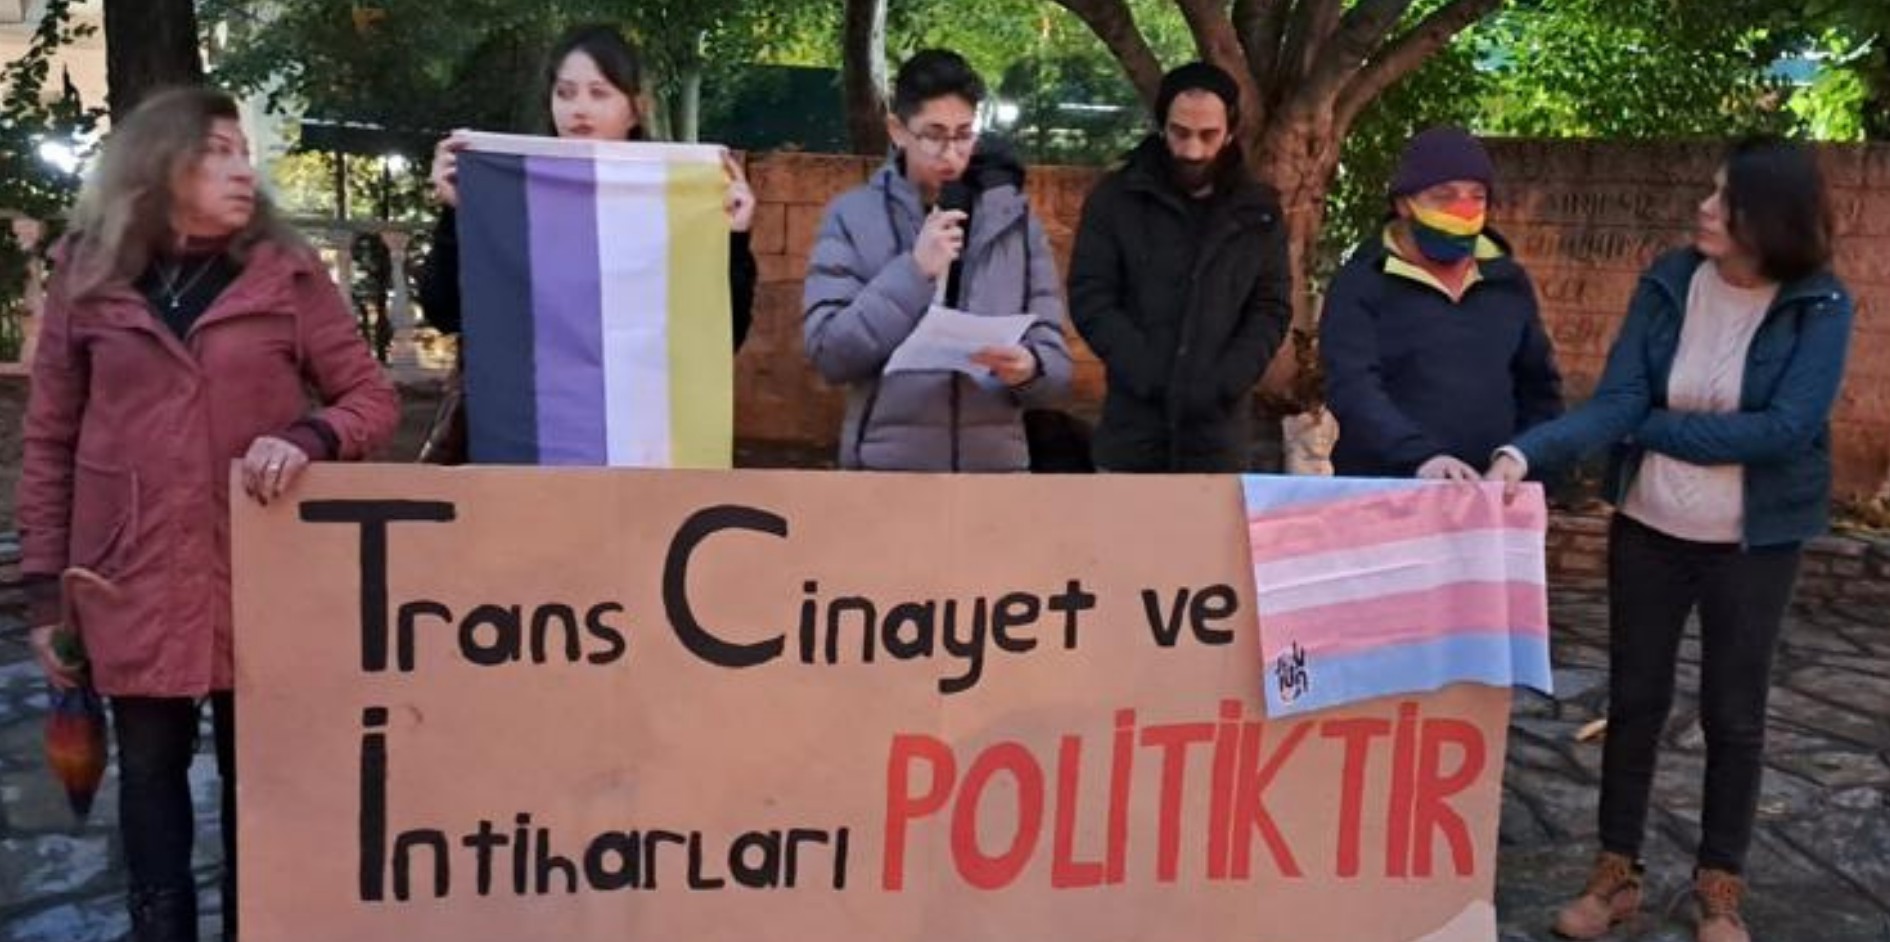 Muğla Queer sokağa çıktı: “Trans cinayetleri politiktir!” | Kaos GL - LGBTİ+ Haber Portalı Haber